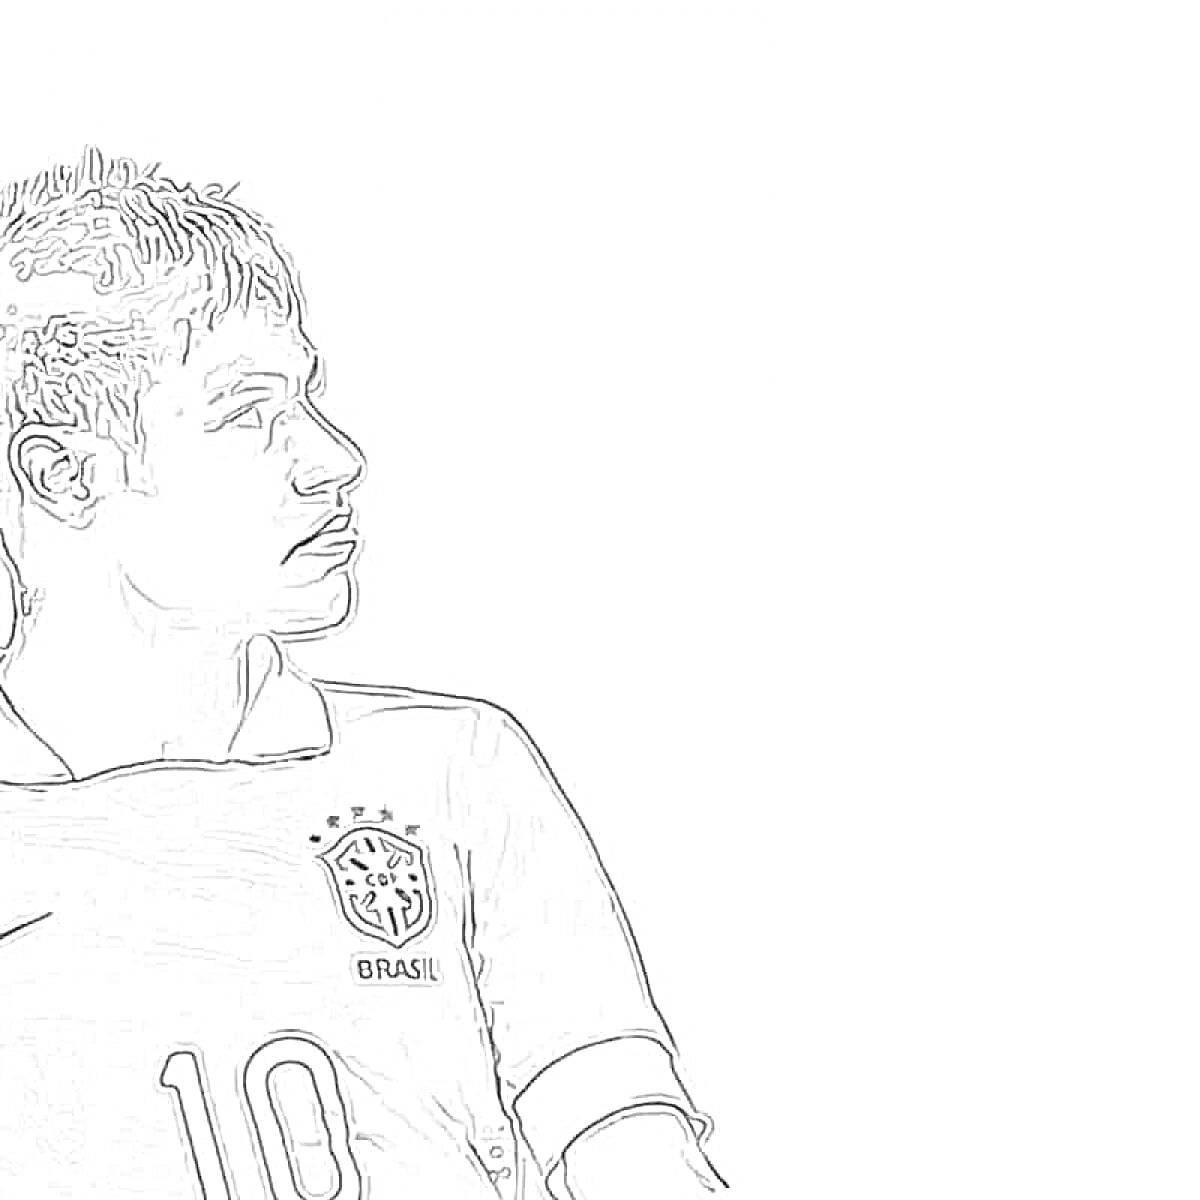 Раскраска Портрет бразильского футболиста с номером 10 на футболке в черно-белом формате для раскрашивания